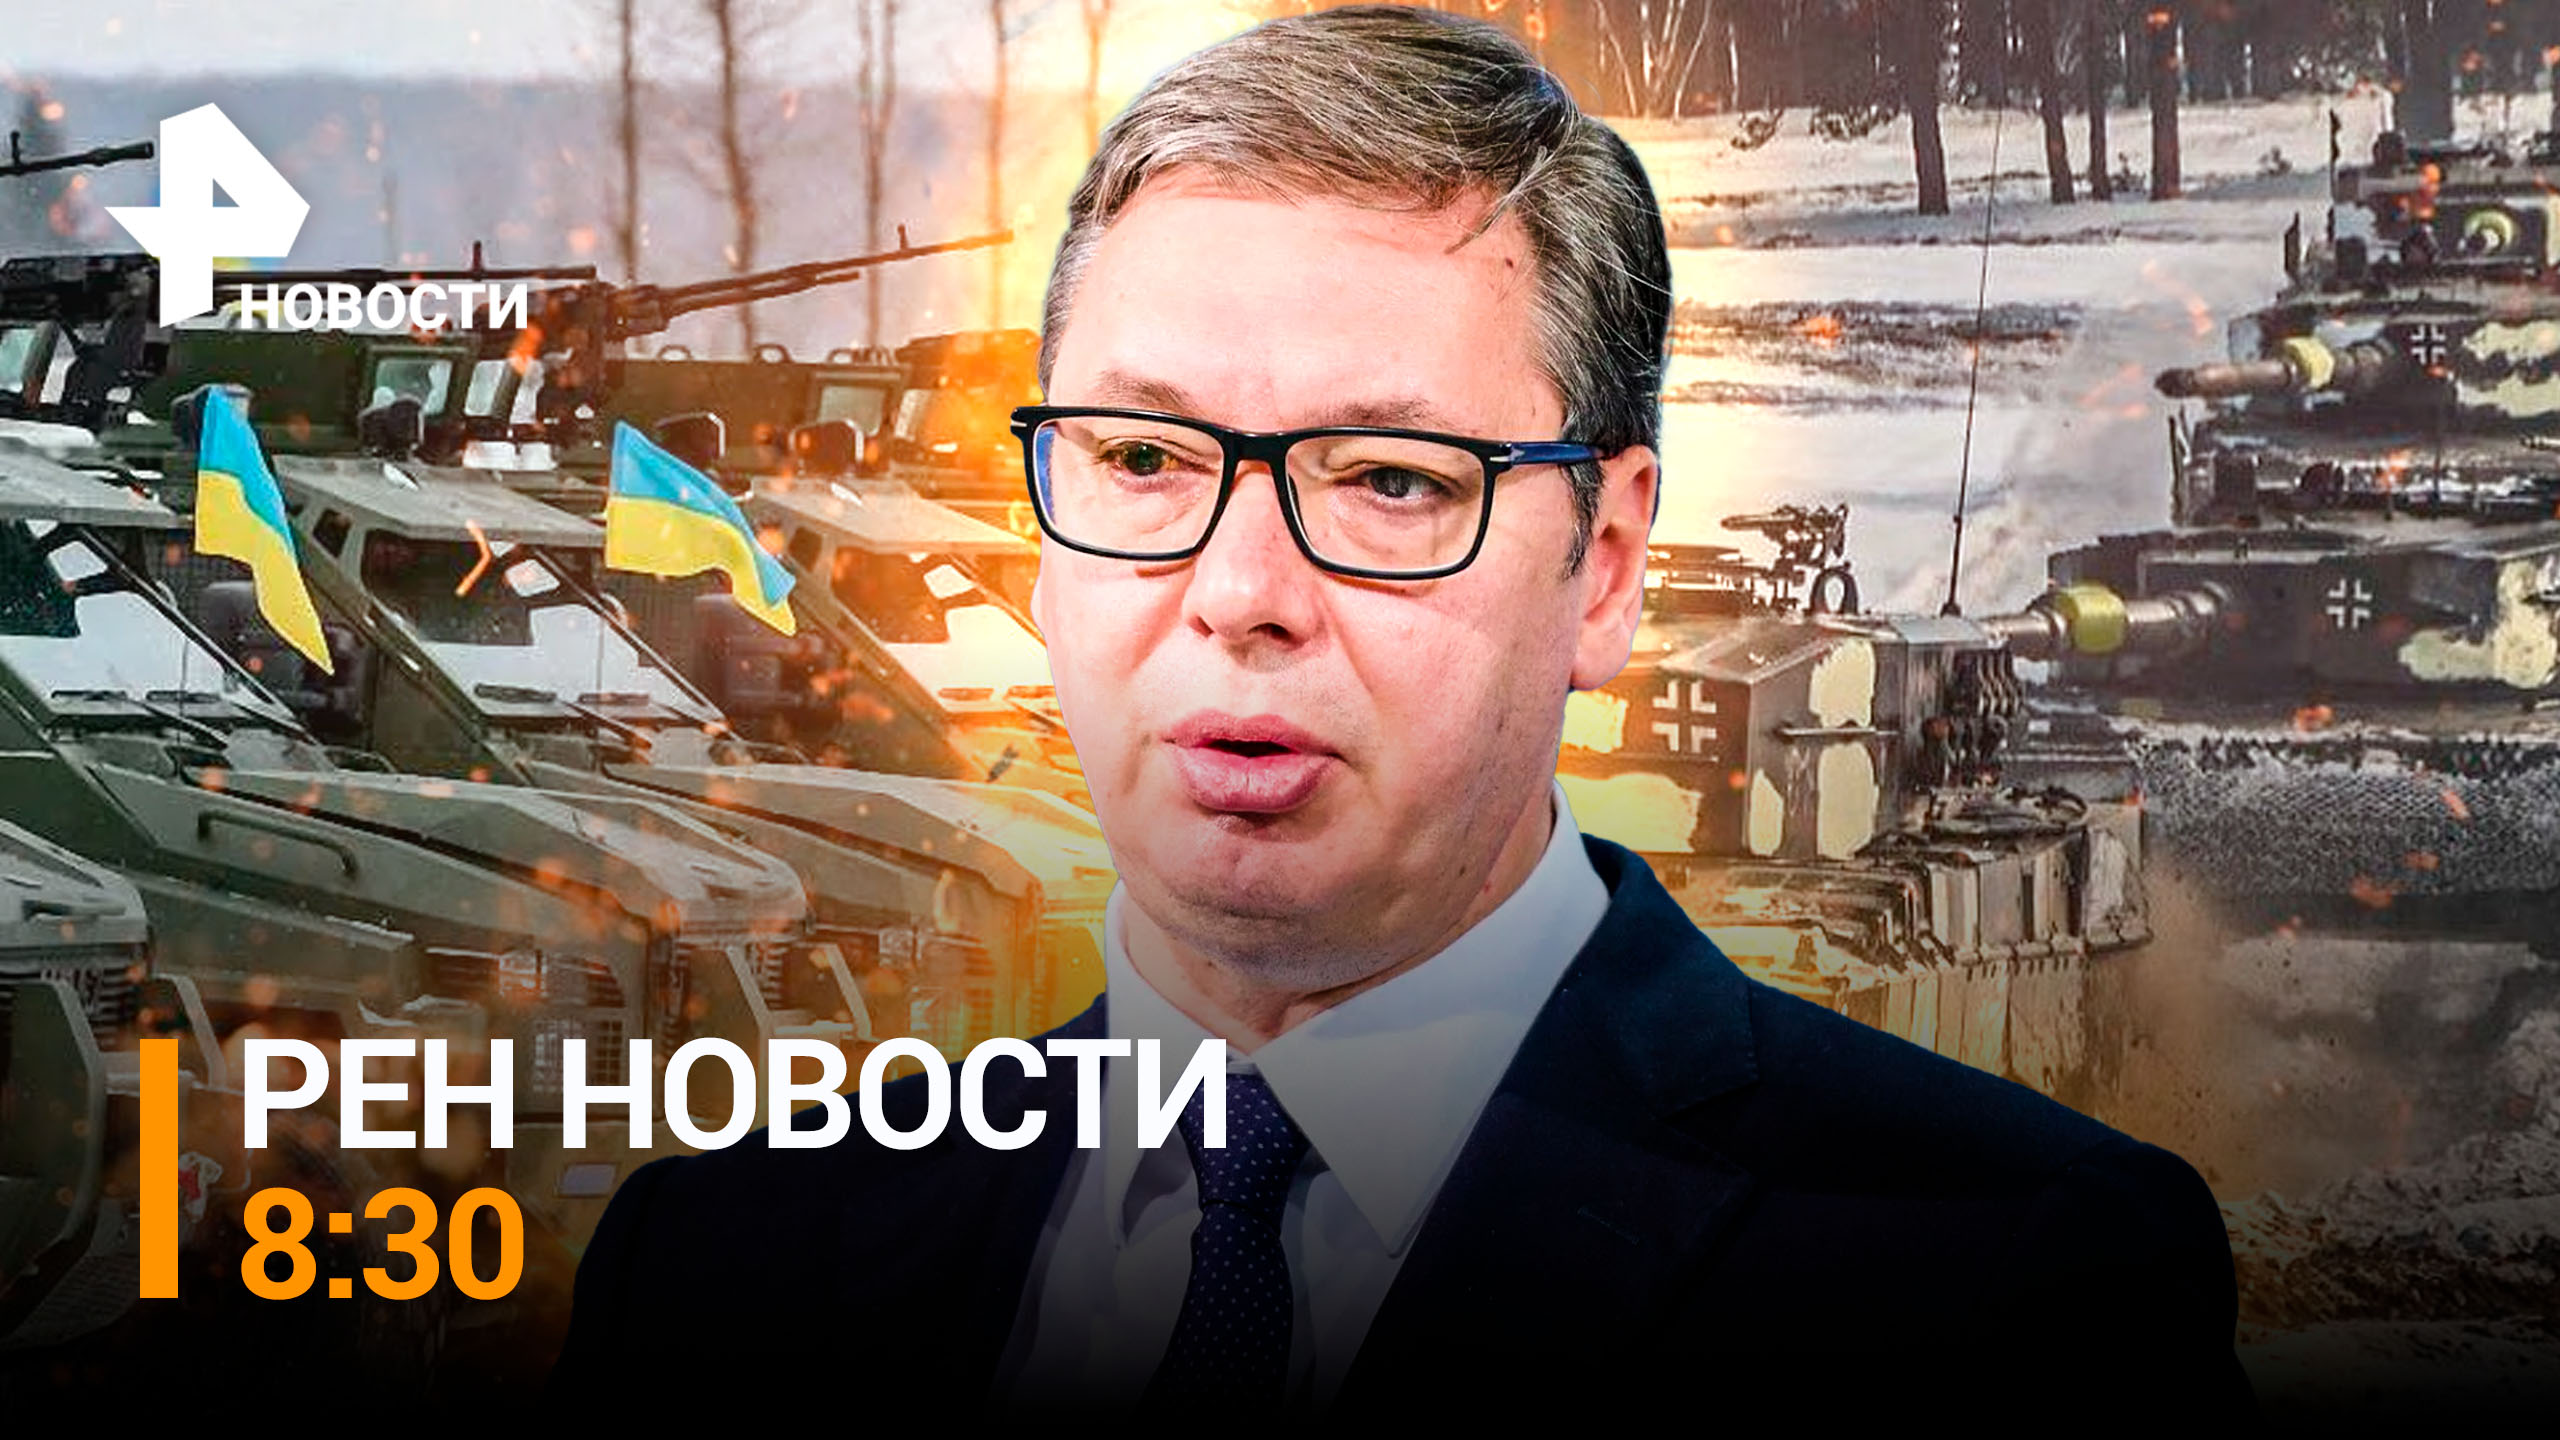 Вашингтон теряет интерес к Украине: куда теперь идет оружие / РЕН ТВ НОВОСТИ 8:30 от 24.01.2023